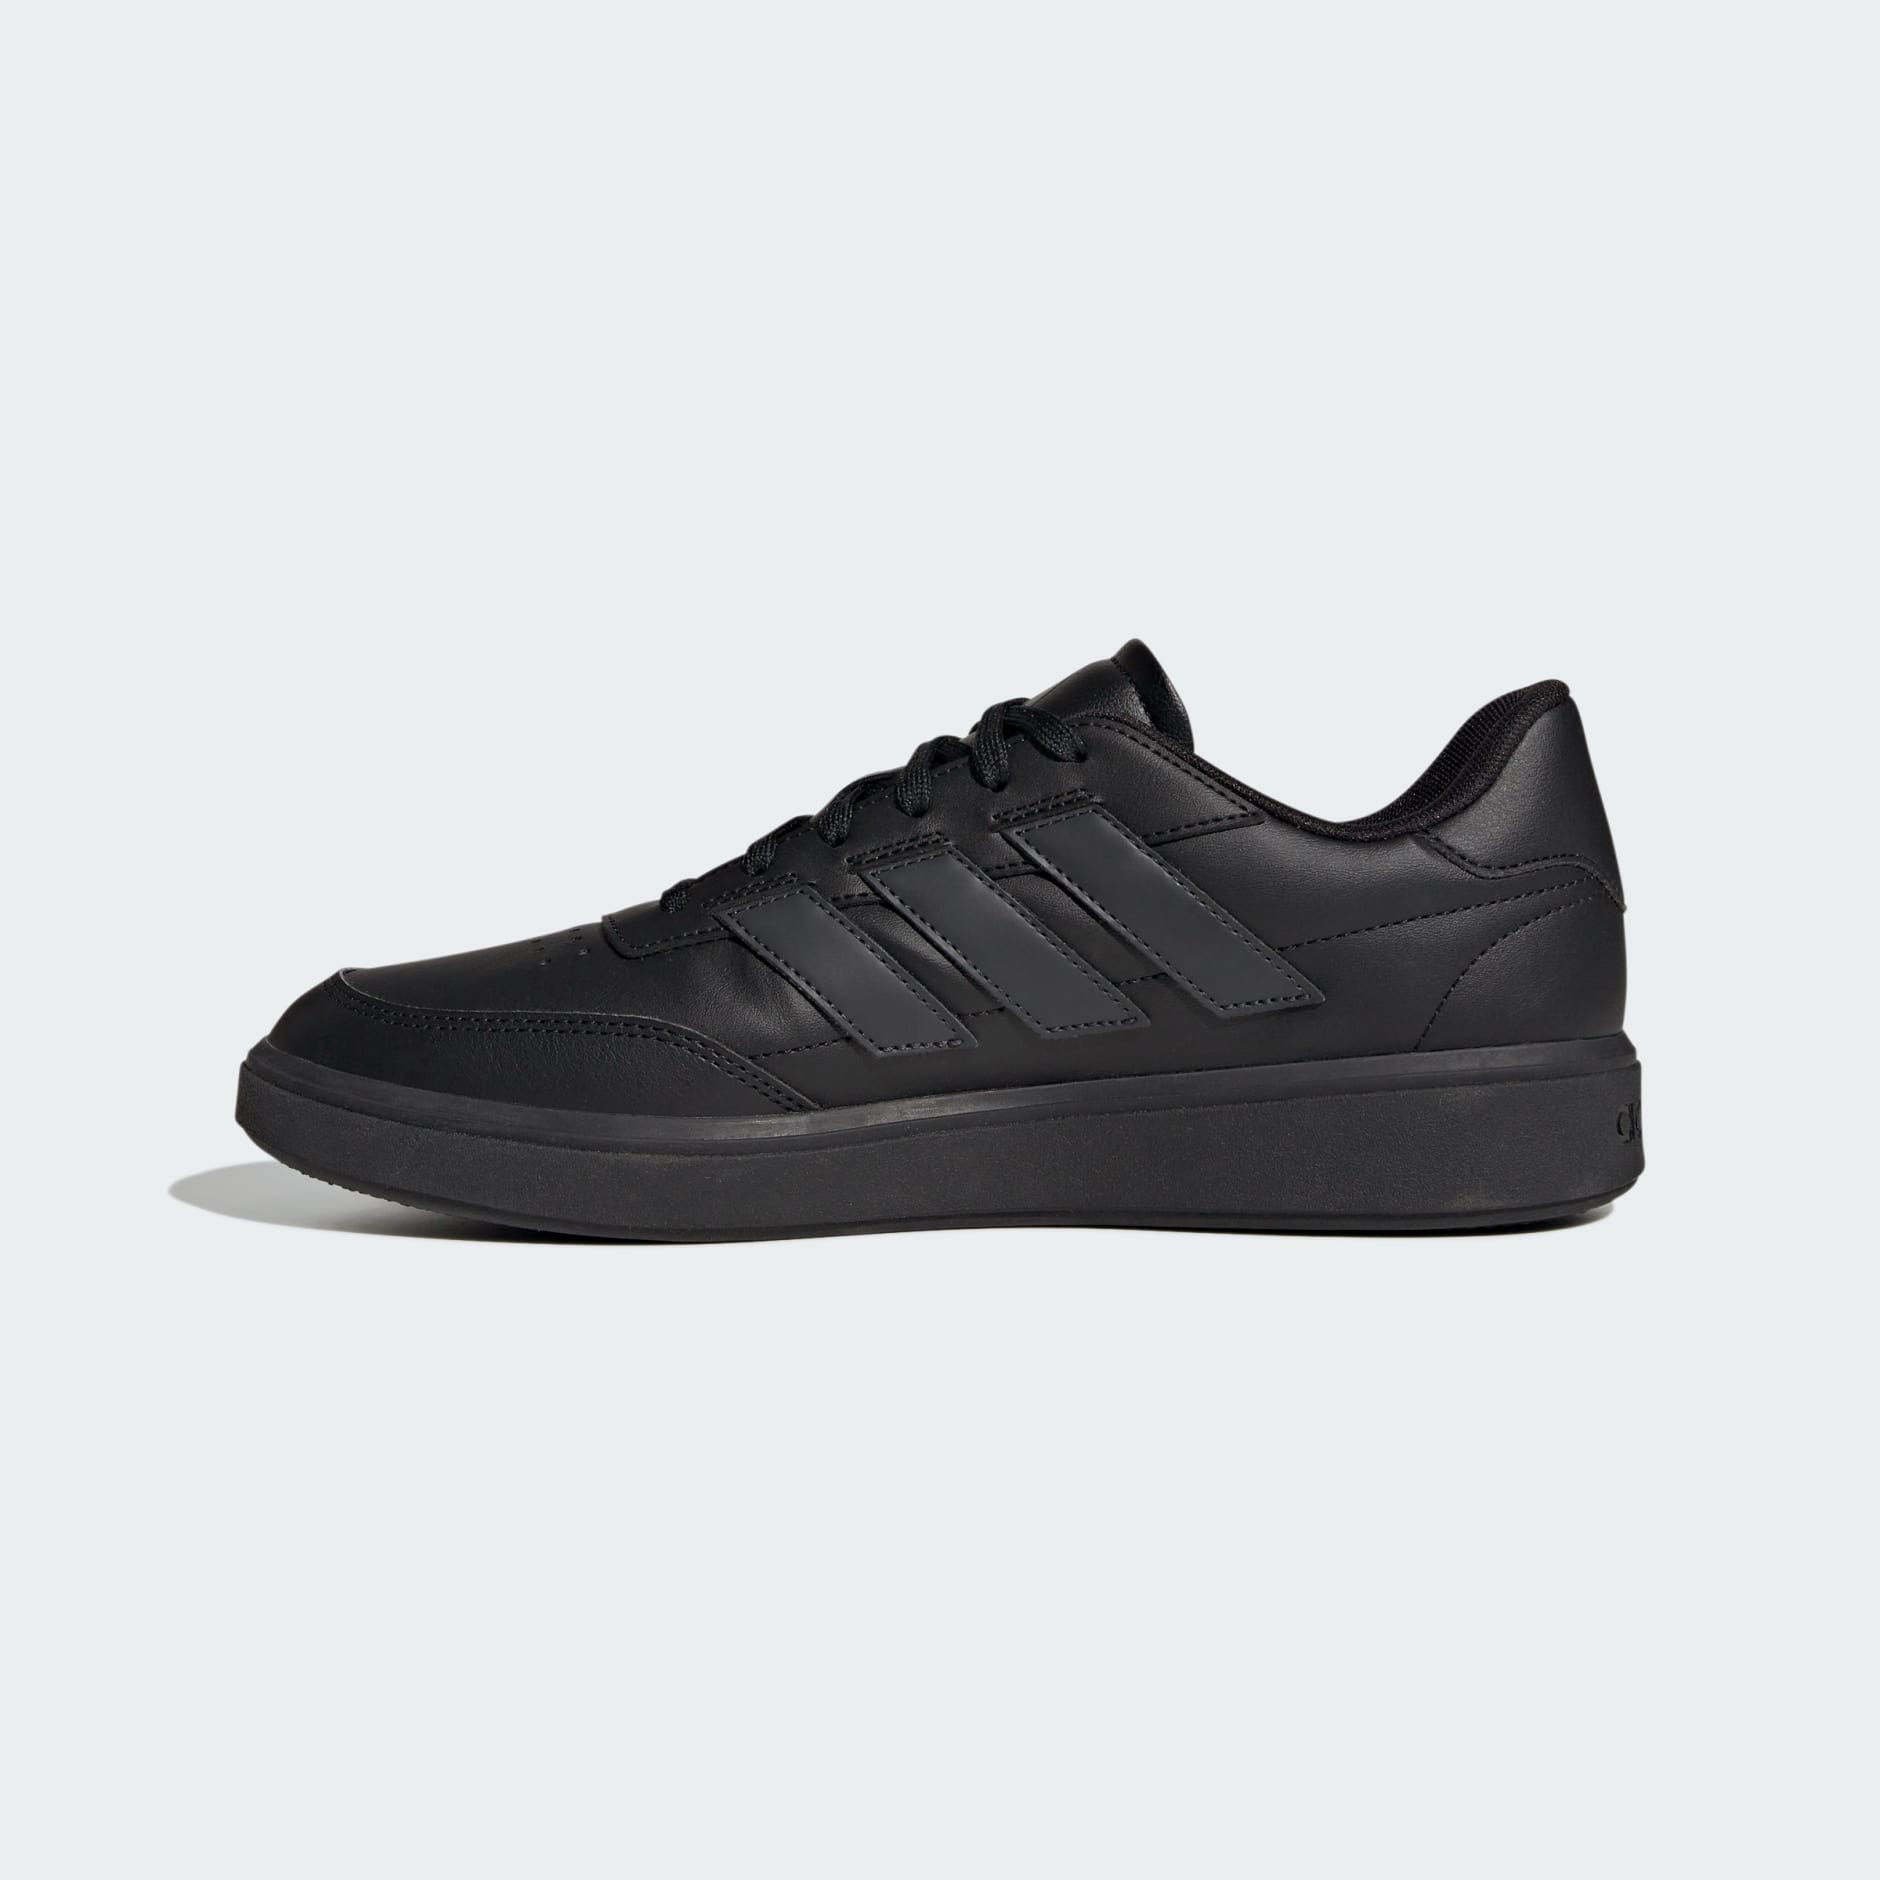 Men's Shoes - Courtblock Shoes - Black | adidas Qatar